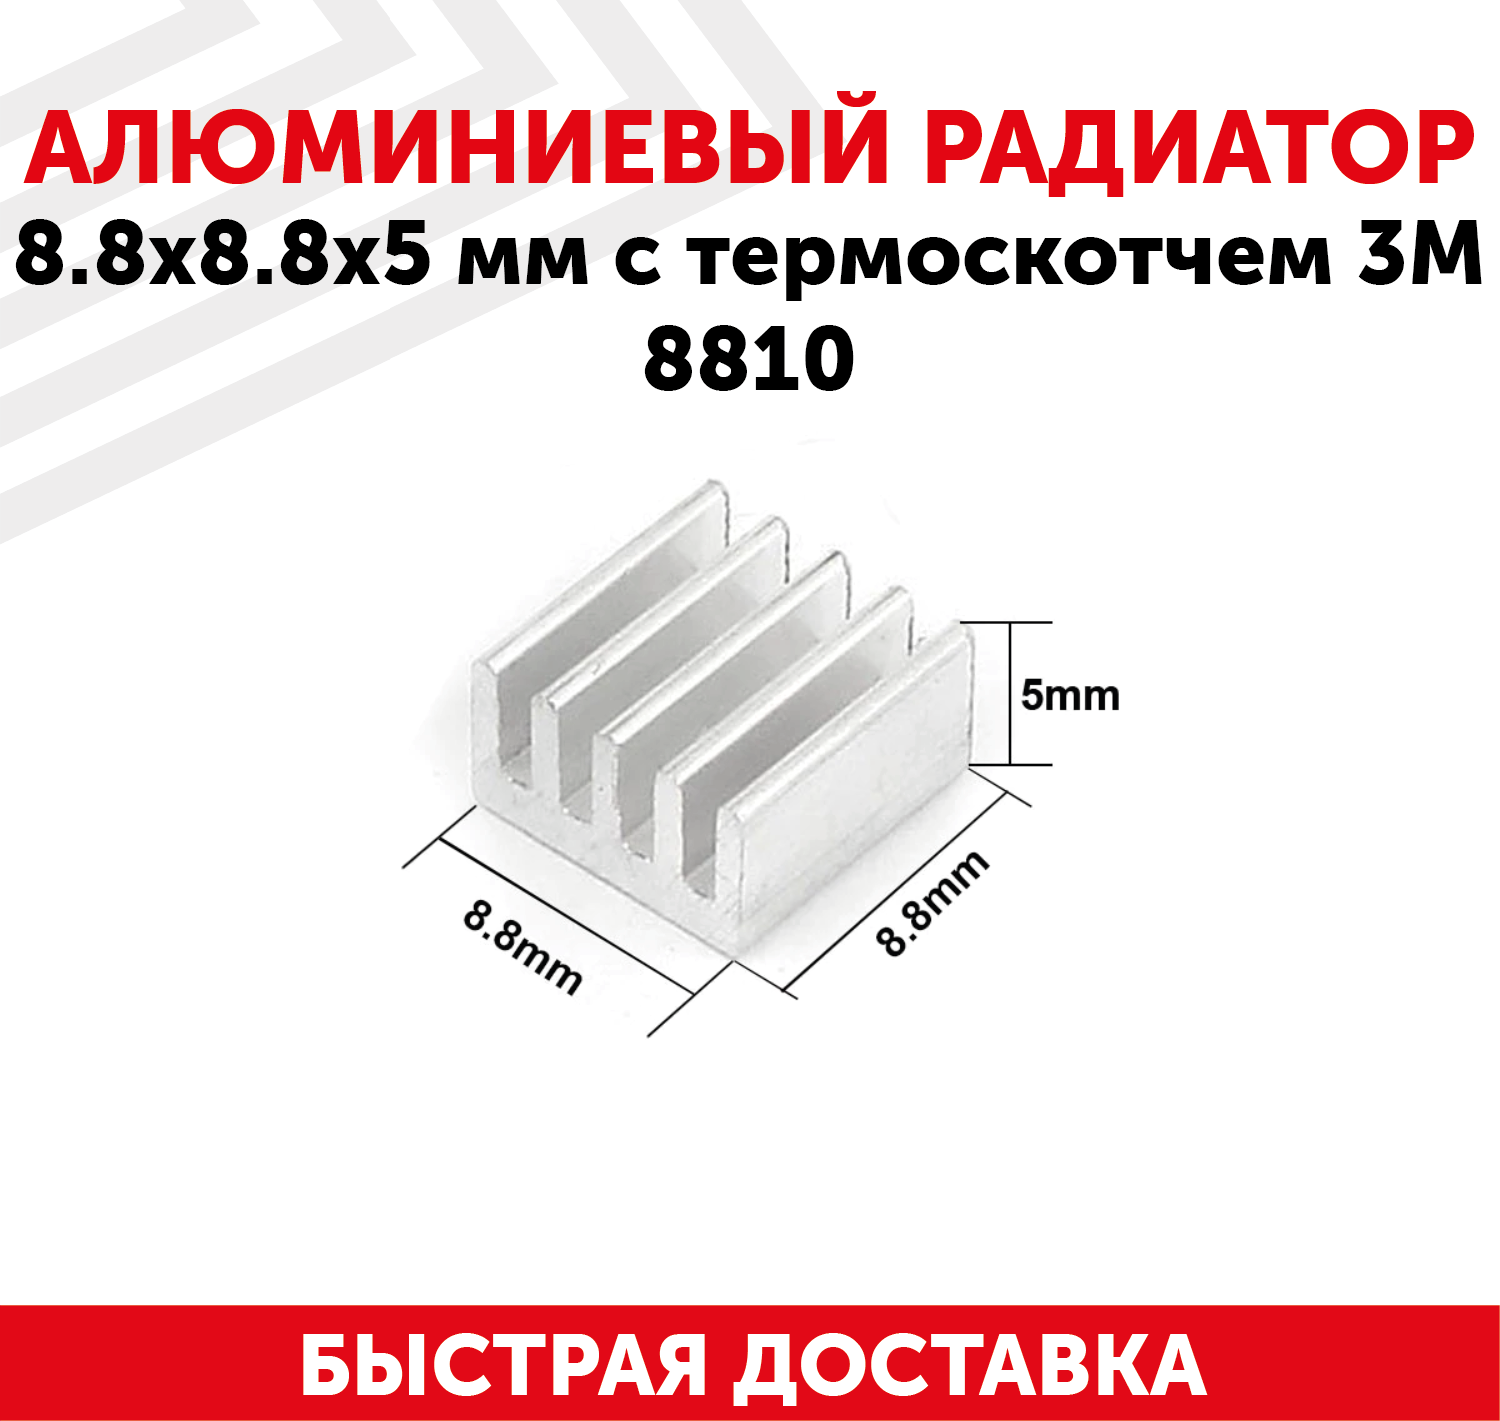 Аллюминиевый радиатор 8.8x8.8x5 мм с термоскотчем 3M 8810